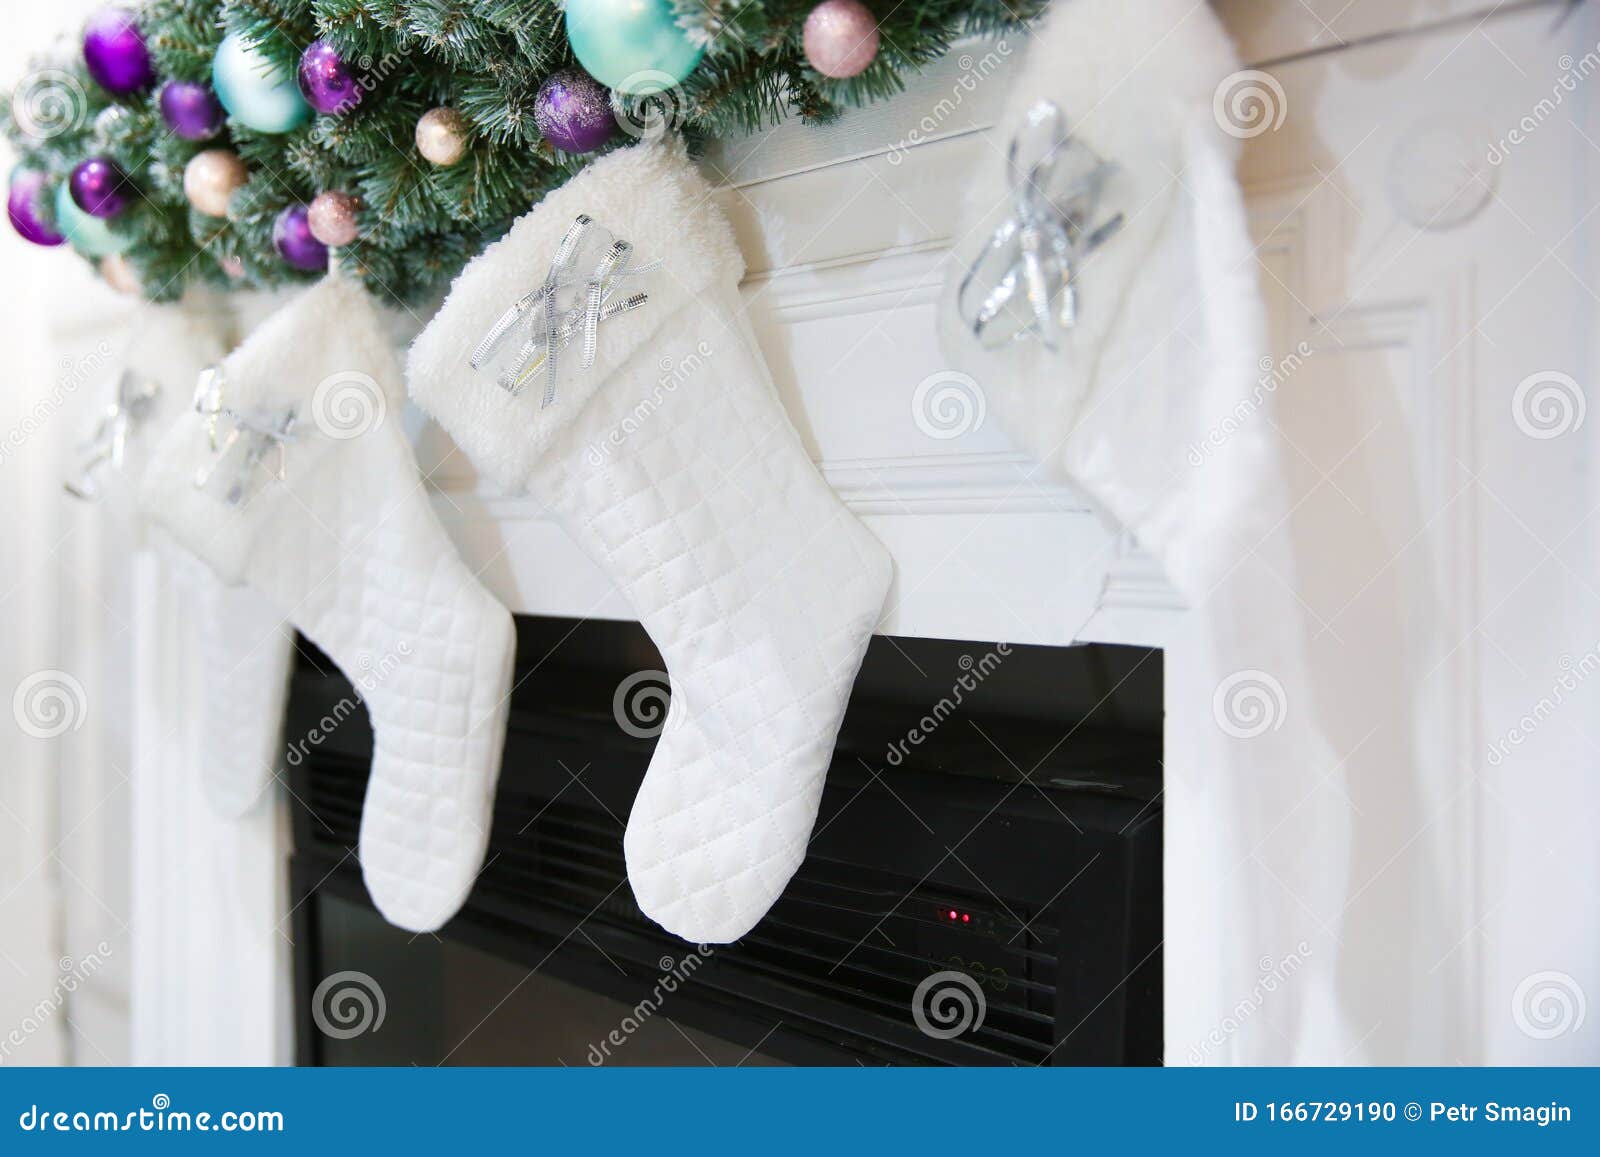 Christmas Socks on the Fireplace Stock Photo - Image of christmas ...